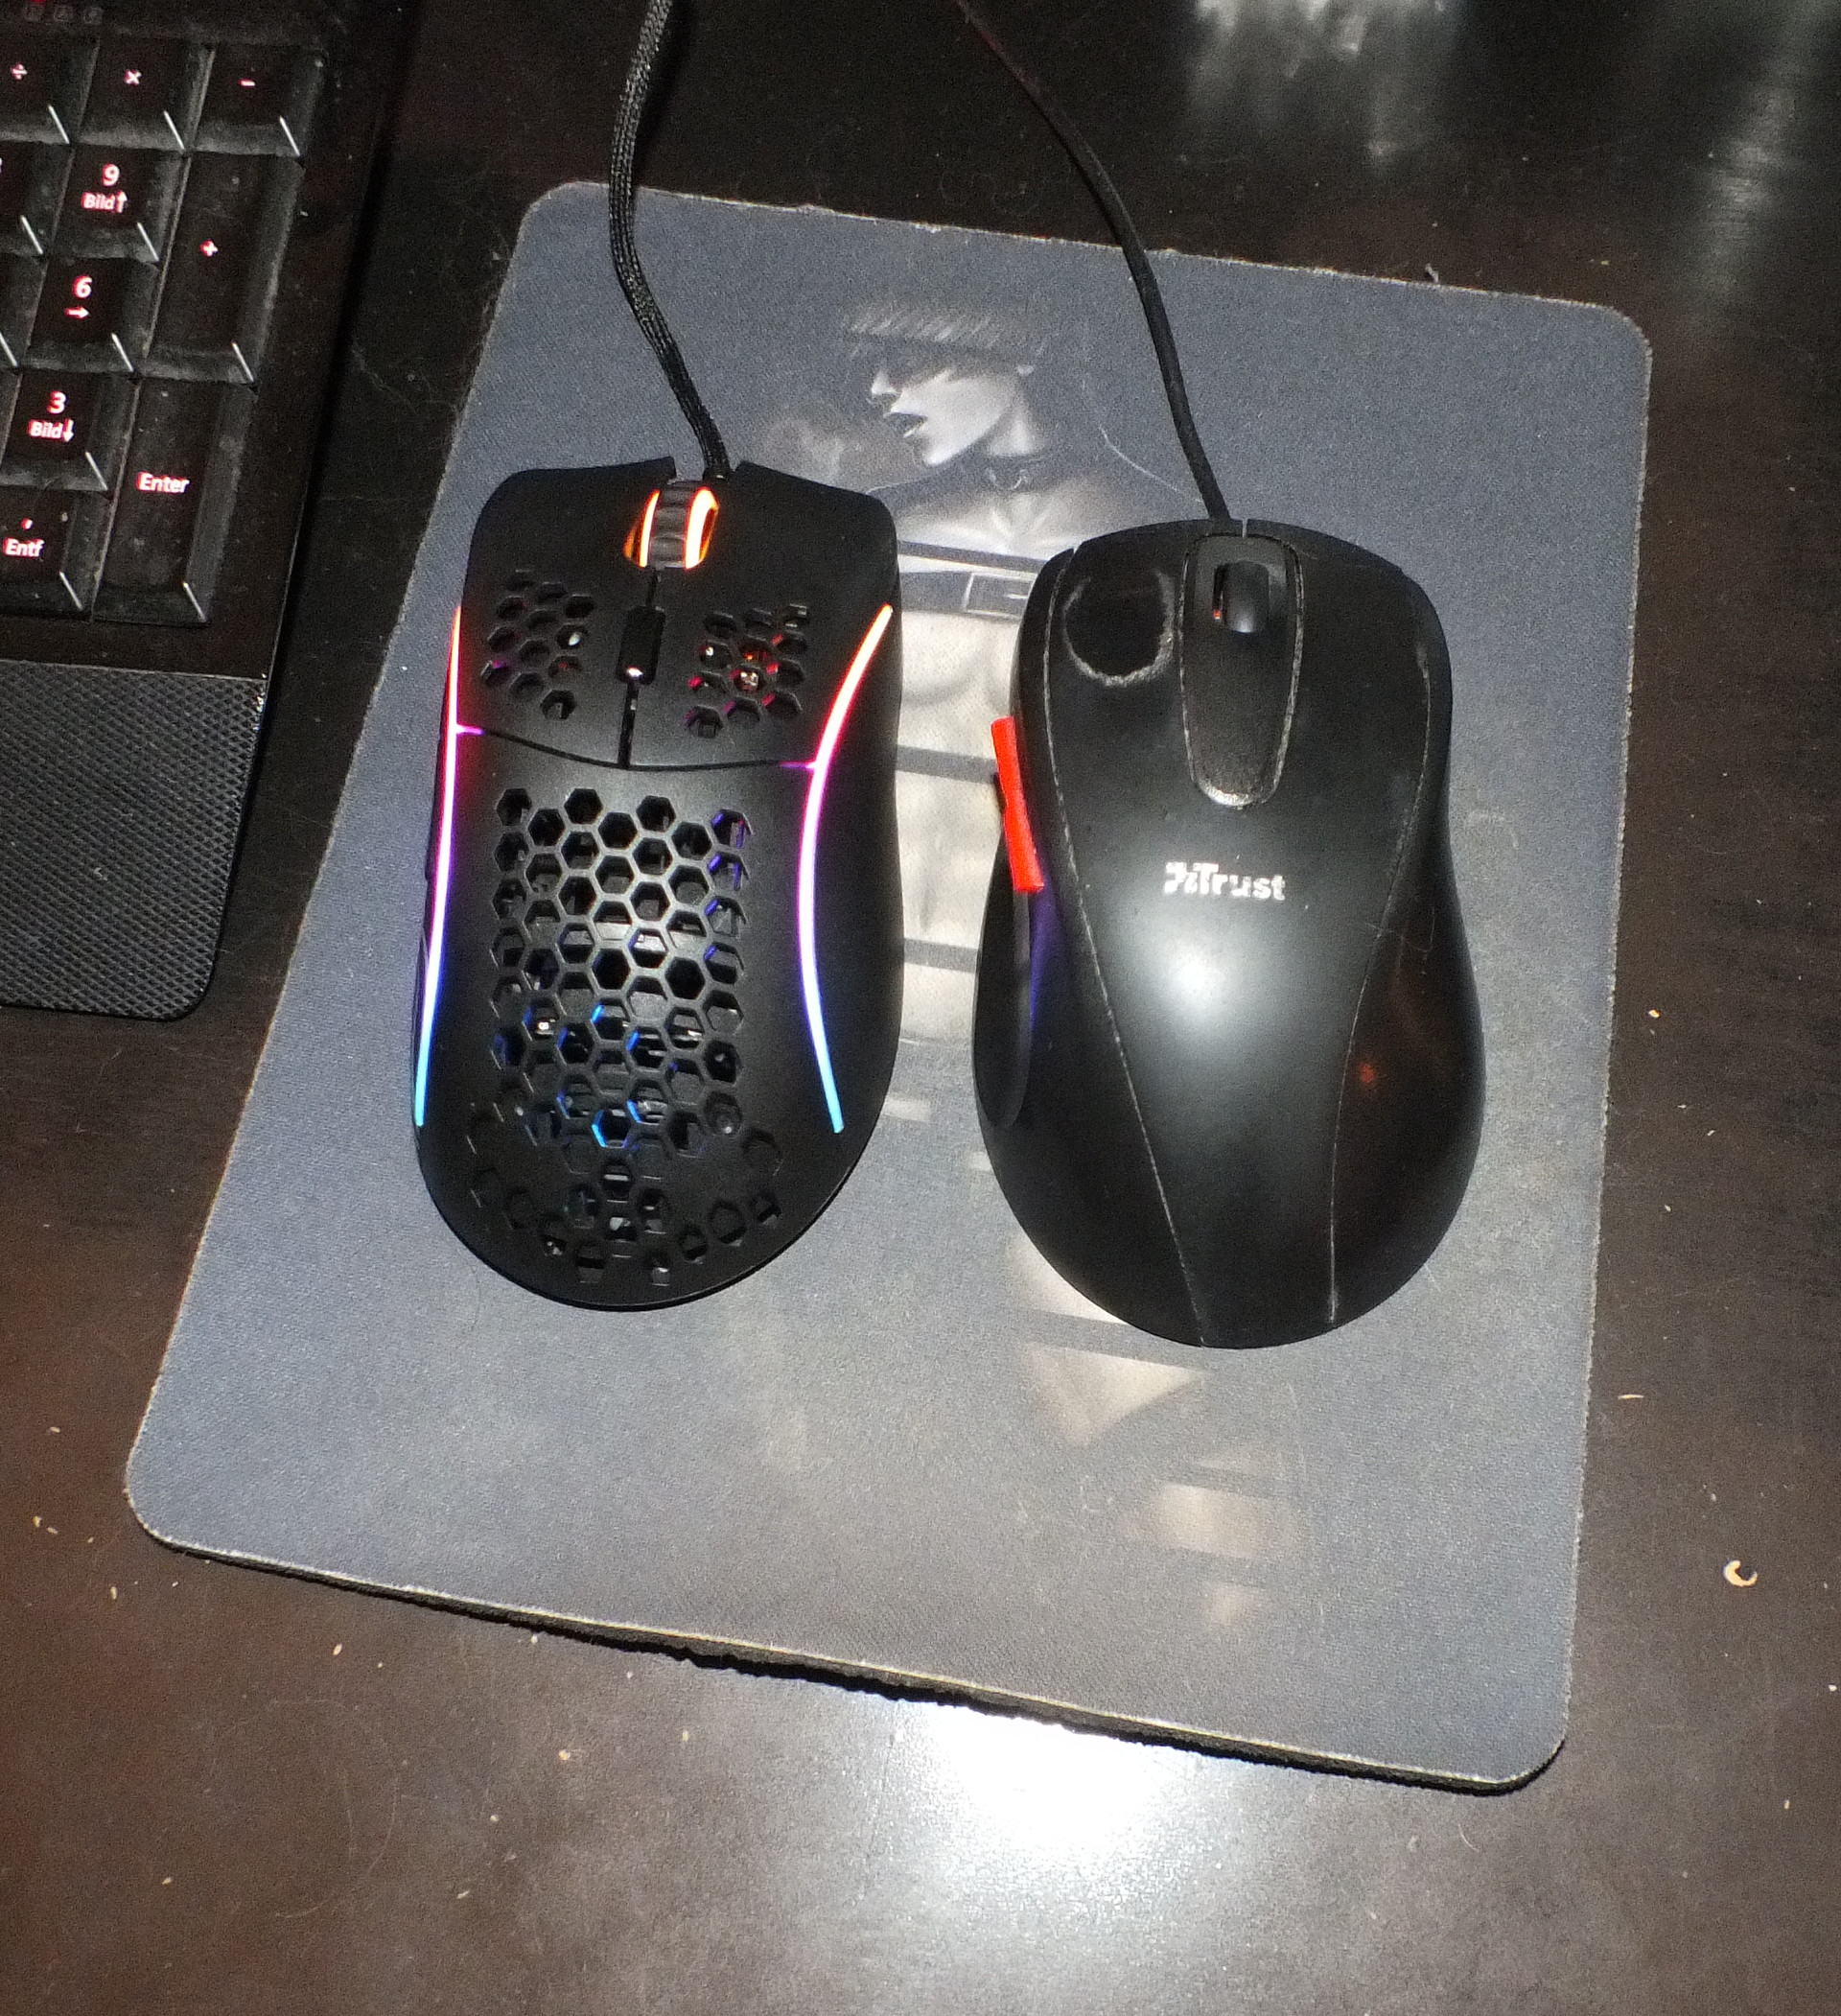 Model D neben namenloser Trust Maus an einem fremden PC